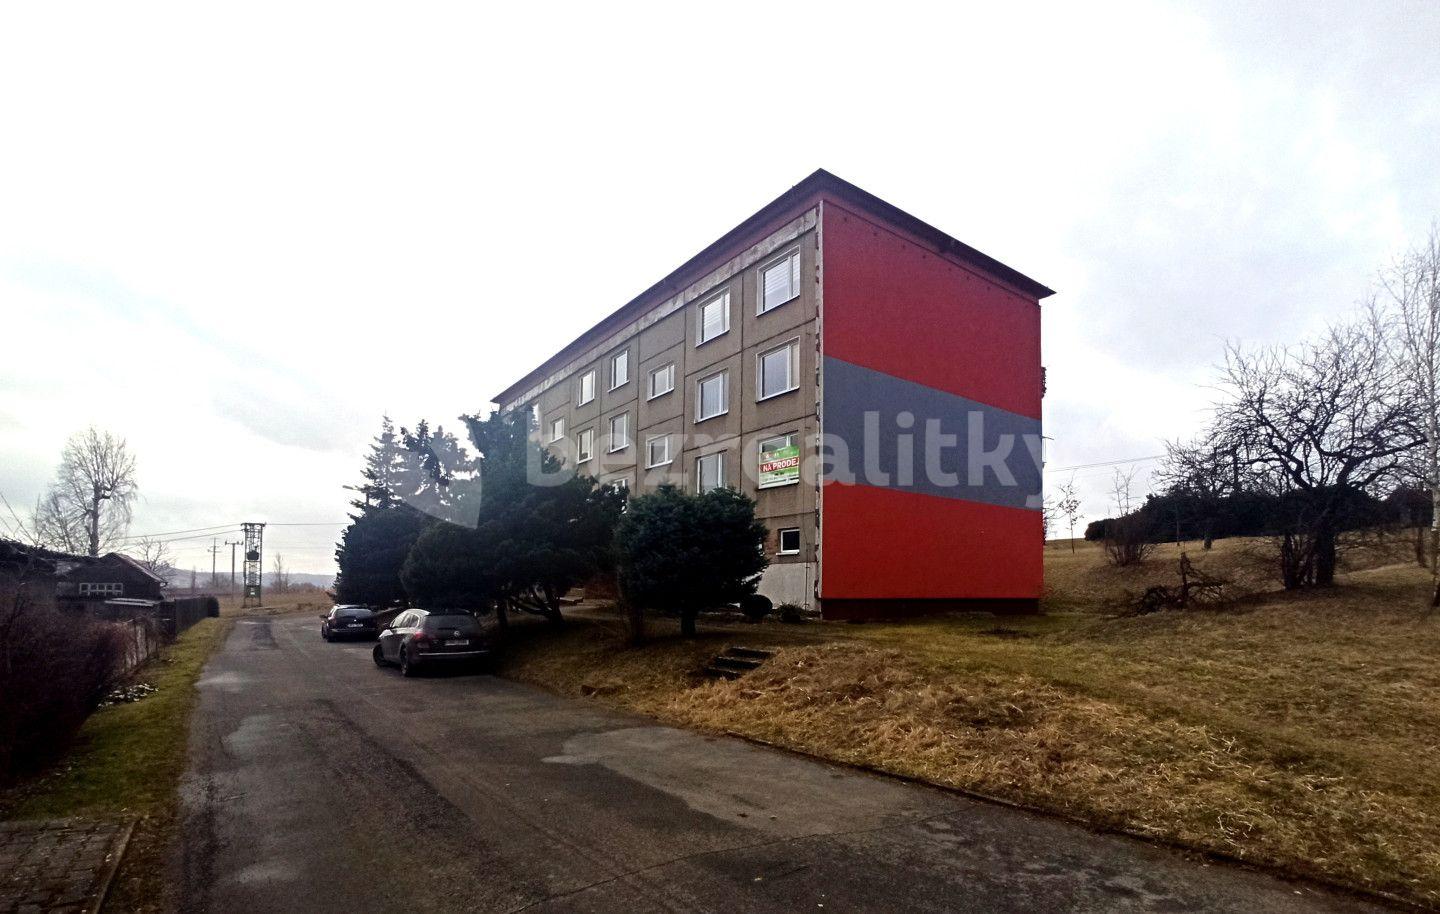 3 bedroom flat for sale, 66 m², Příční, Moravský Beroun, Olomoucký Region